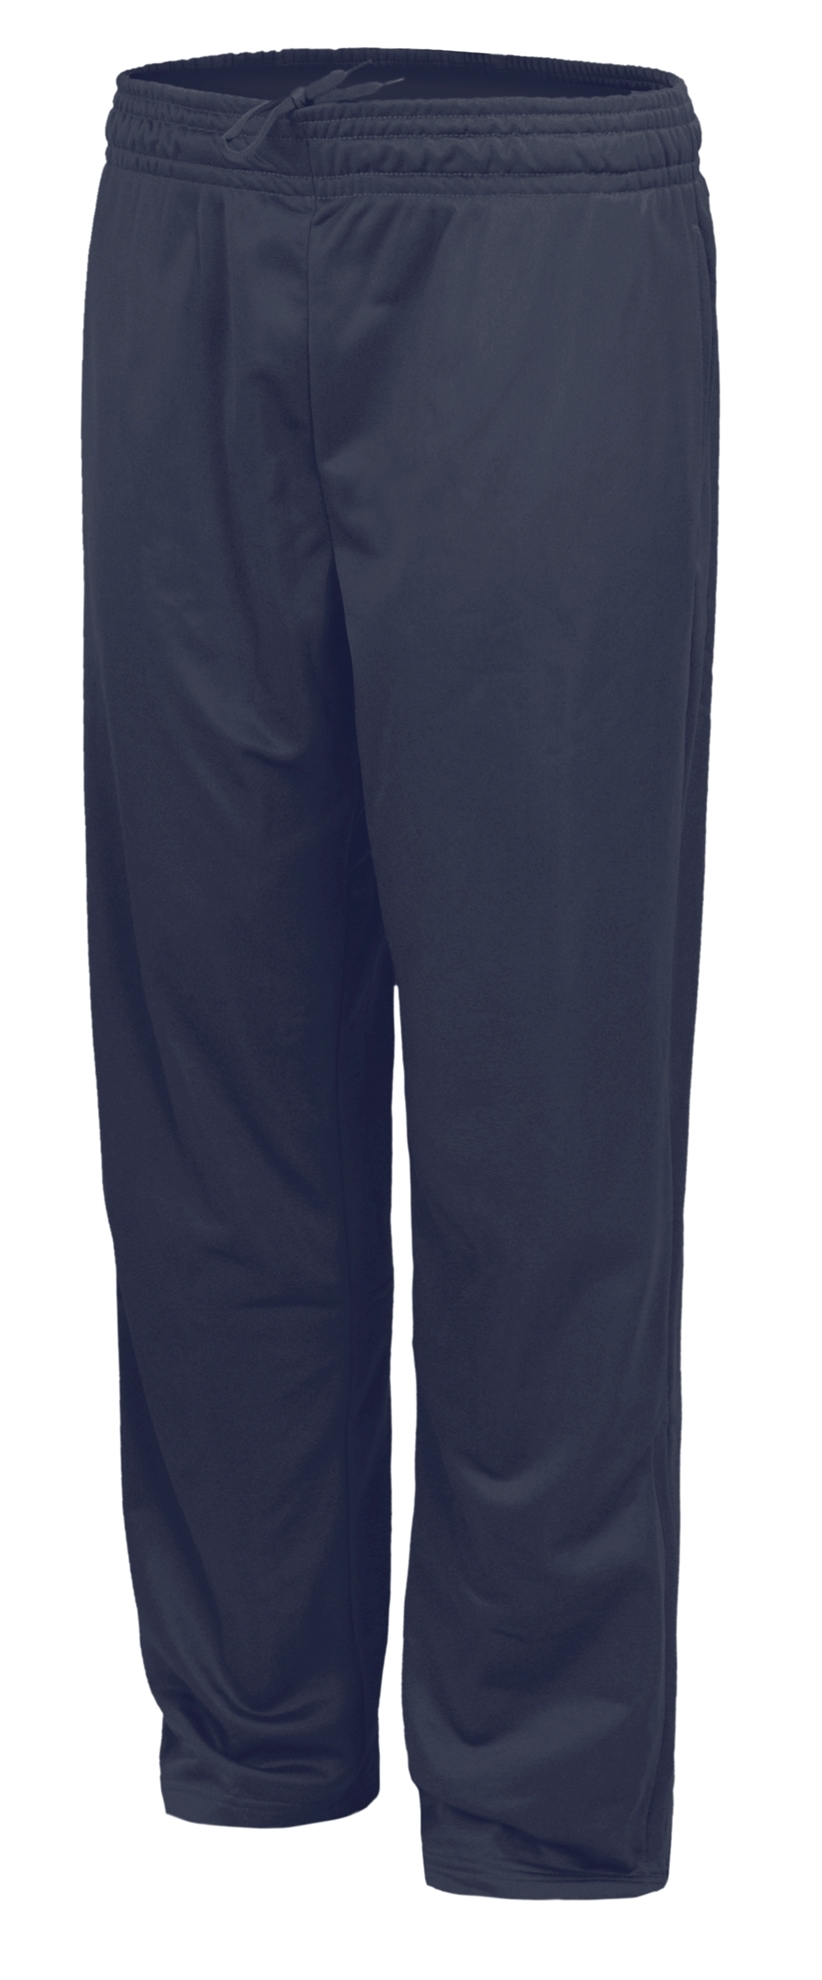 BAW Athletic Wear F110Y - Youth Fleece Pant